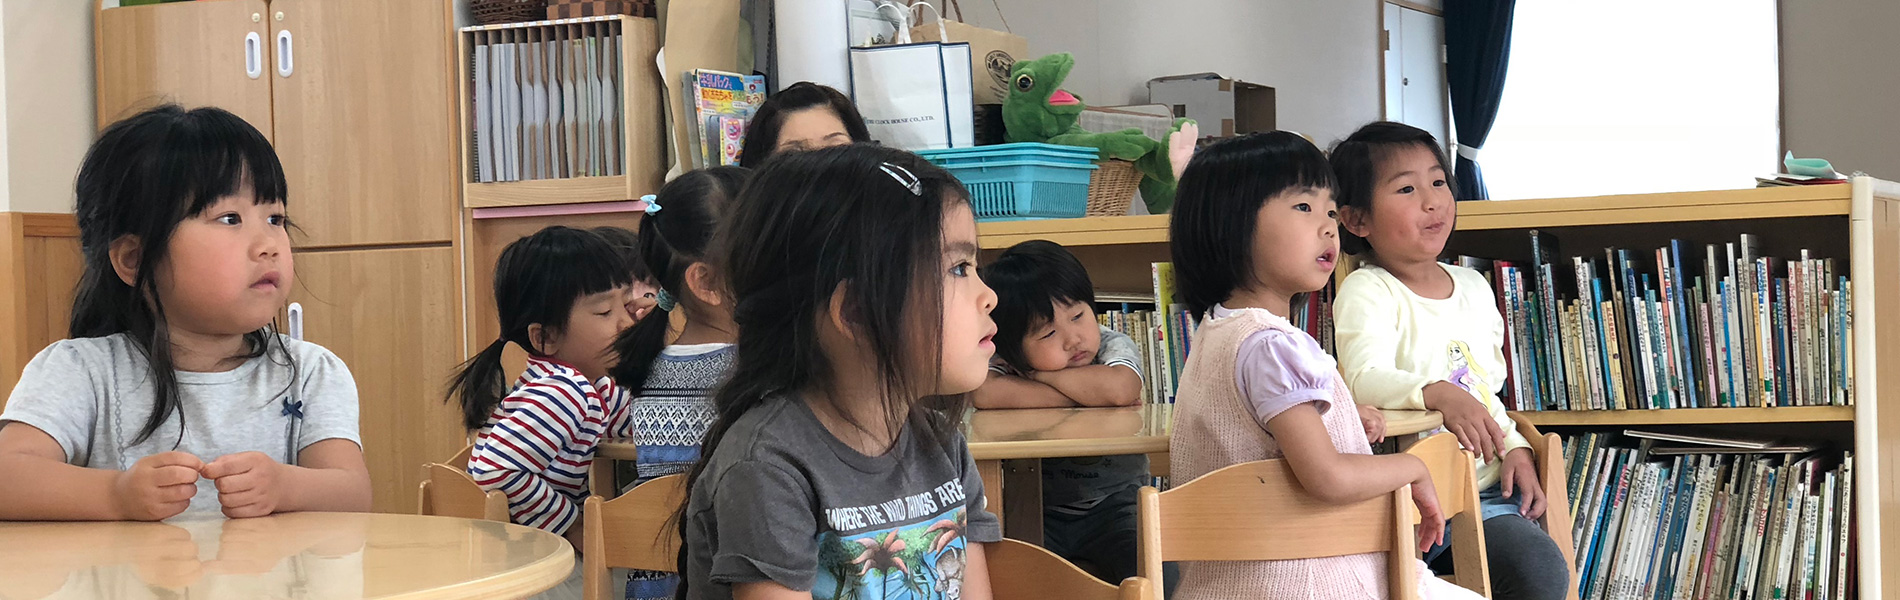 小山市の幼稚園 つぼみキンダーガーテン